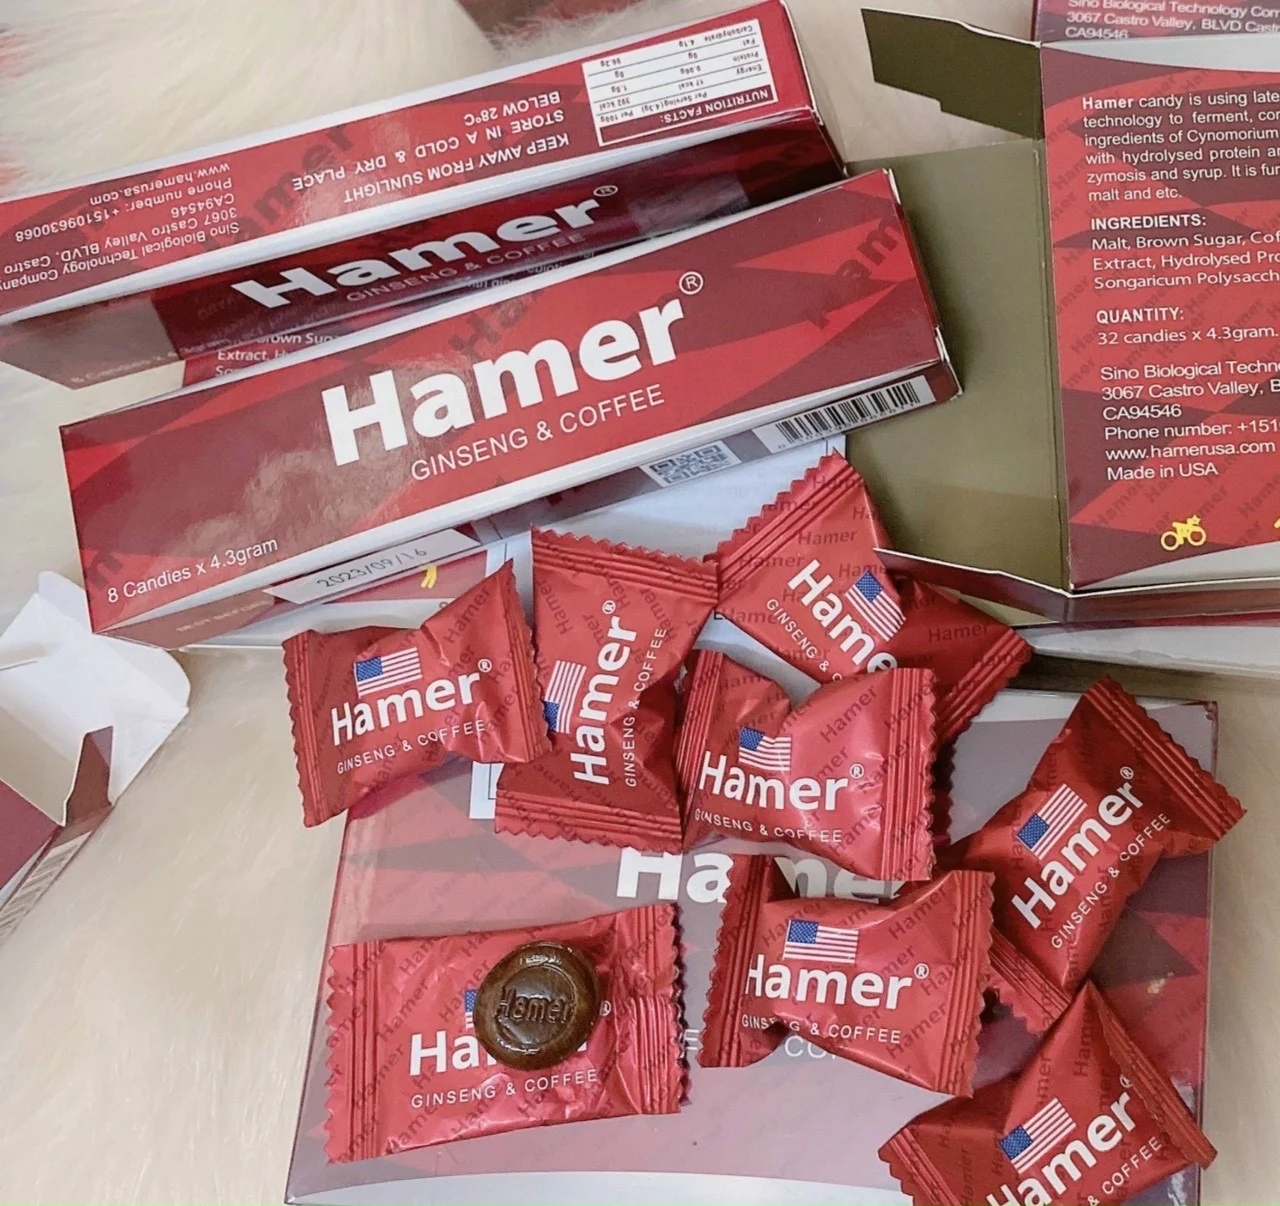 Kẹo Hamer Mỹ là cái tên được nhắc nhiều nhất trong giới tăng sinh lý hiện nay